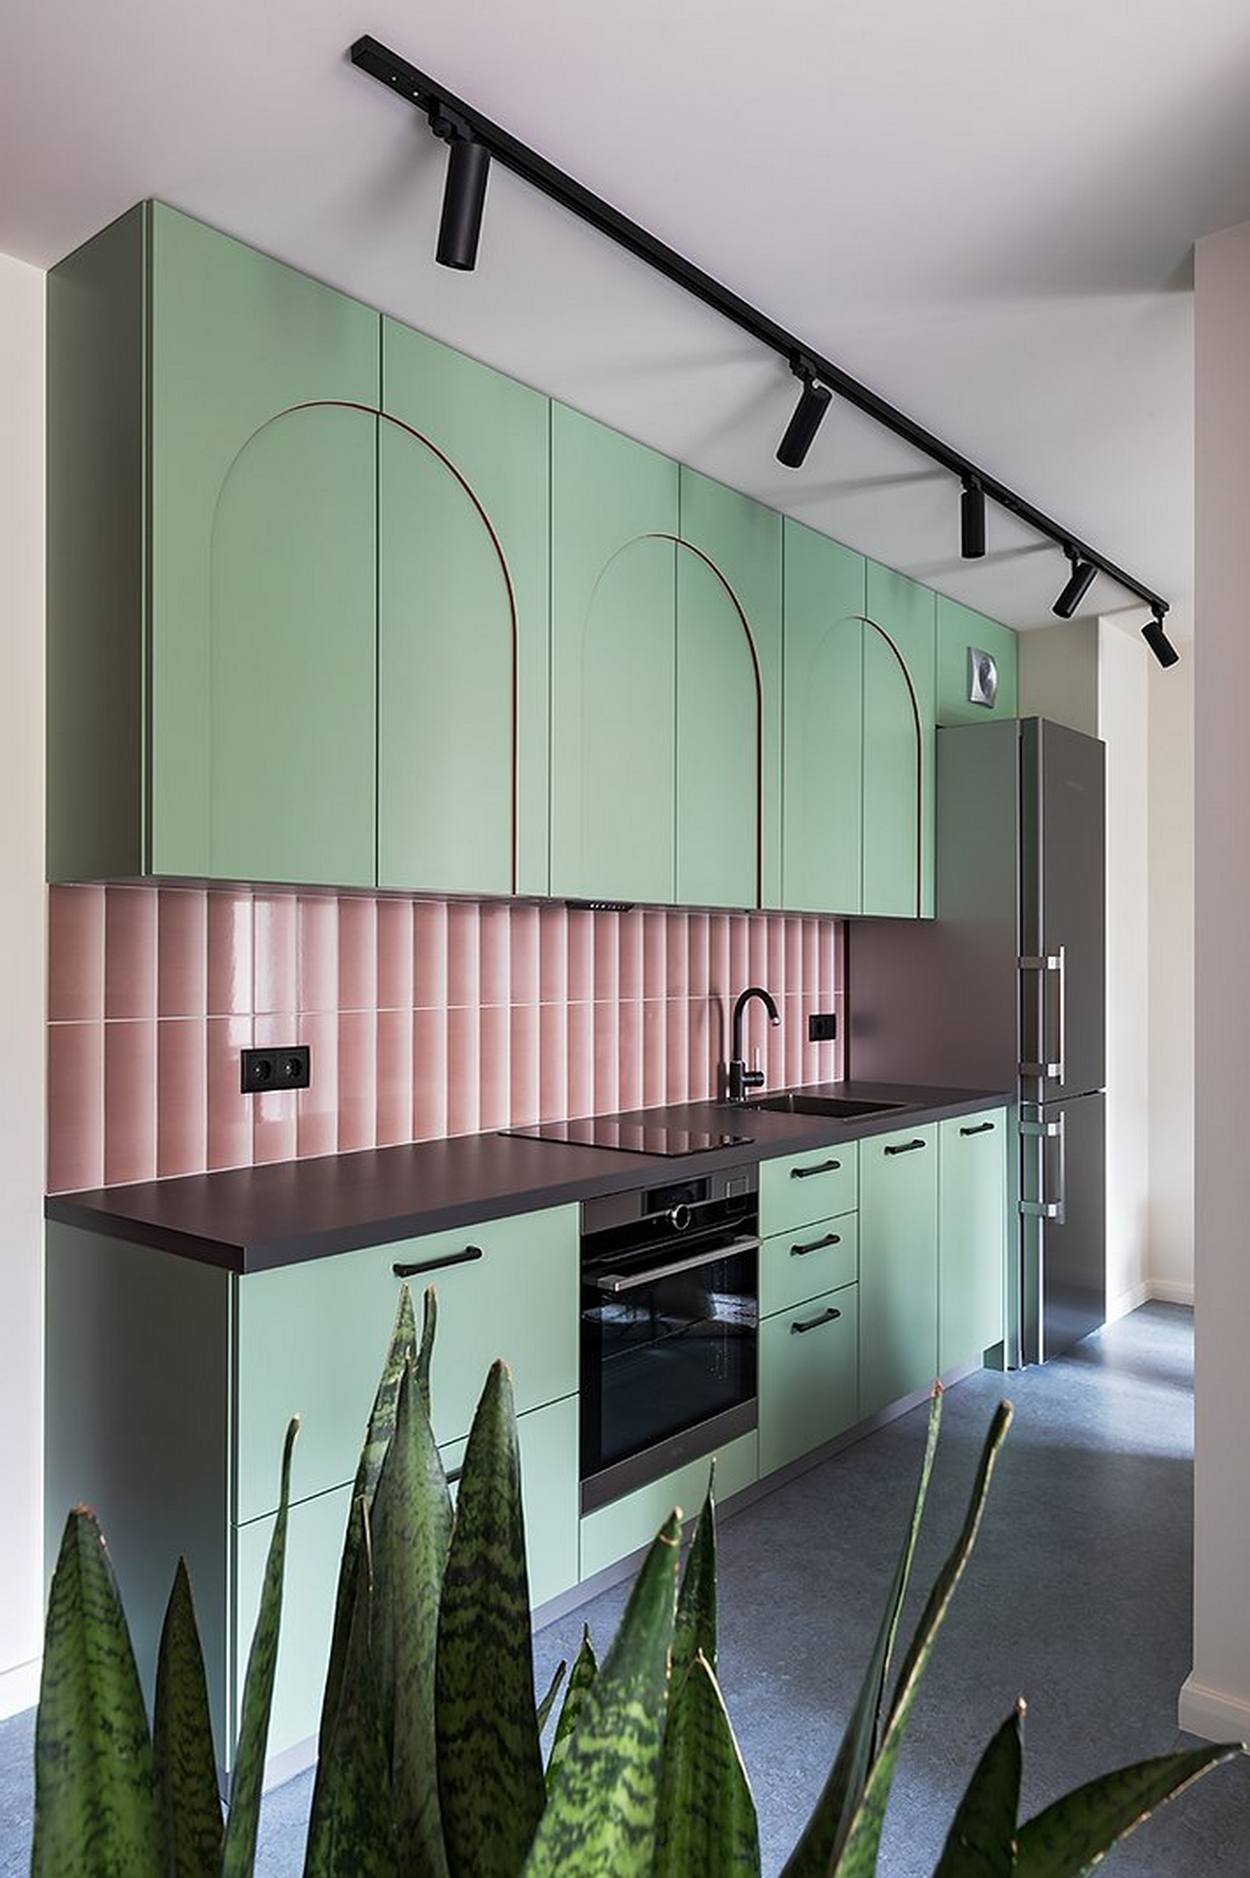 Phòng bếp thiết kế kiểu chữ I, phù hợp với cấu trúc dài hẹp, tạo lối đi thông thoáng đồng thời đảm bảo tiện nghi cho không gian nấu nướng. Khu vực backsplash ốp gạch hồng sáng bóng làm điểm nhấn giữa hệ tủ bếp màu xanh bạc hà dịu mát.